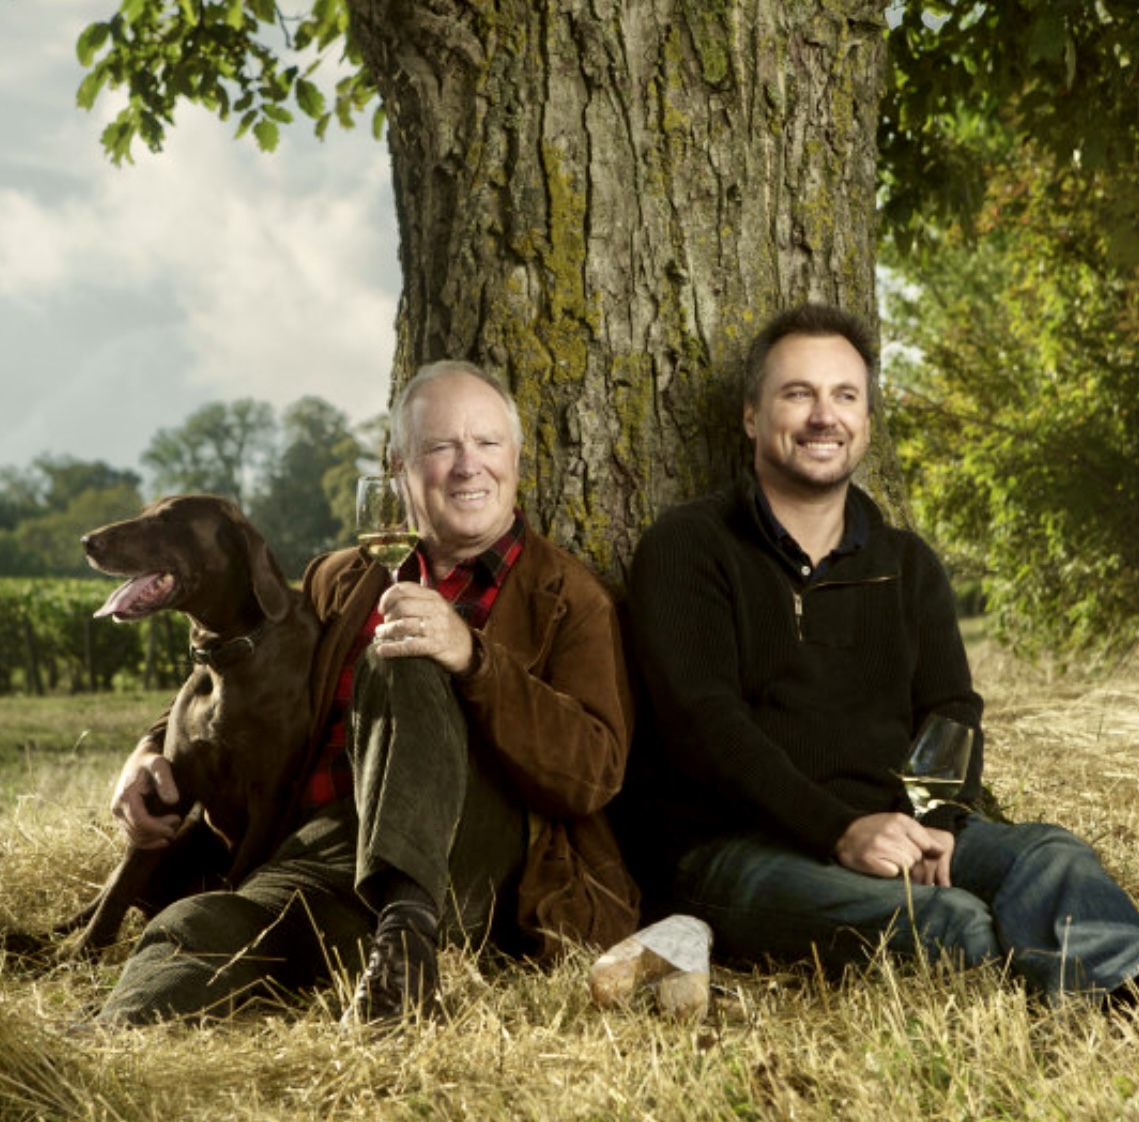 Deux hommes assis sous un arbre avec un chien, dégustant un verre de Chablis bien frais de Jean-Marc Brocard.